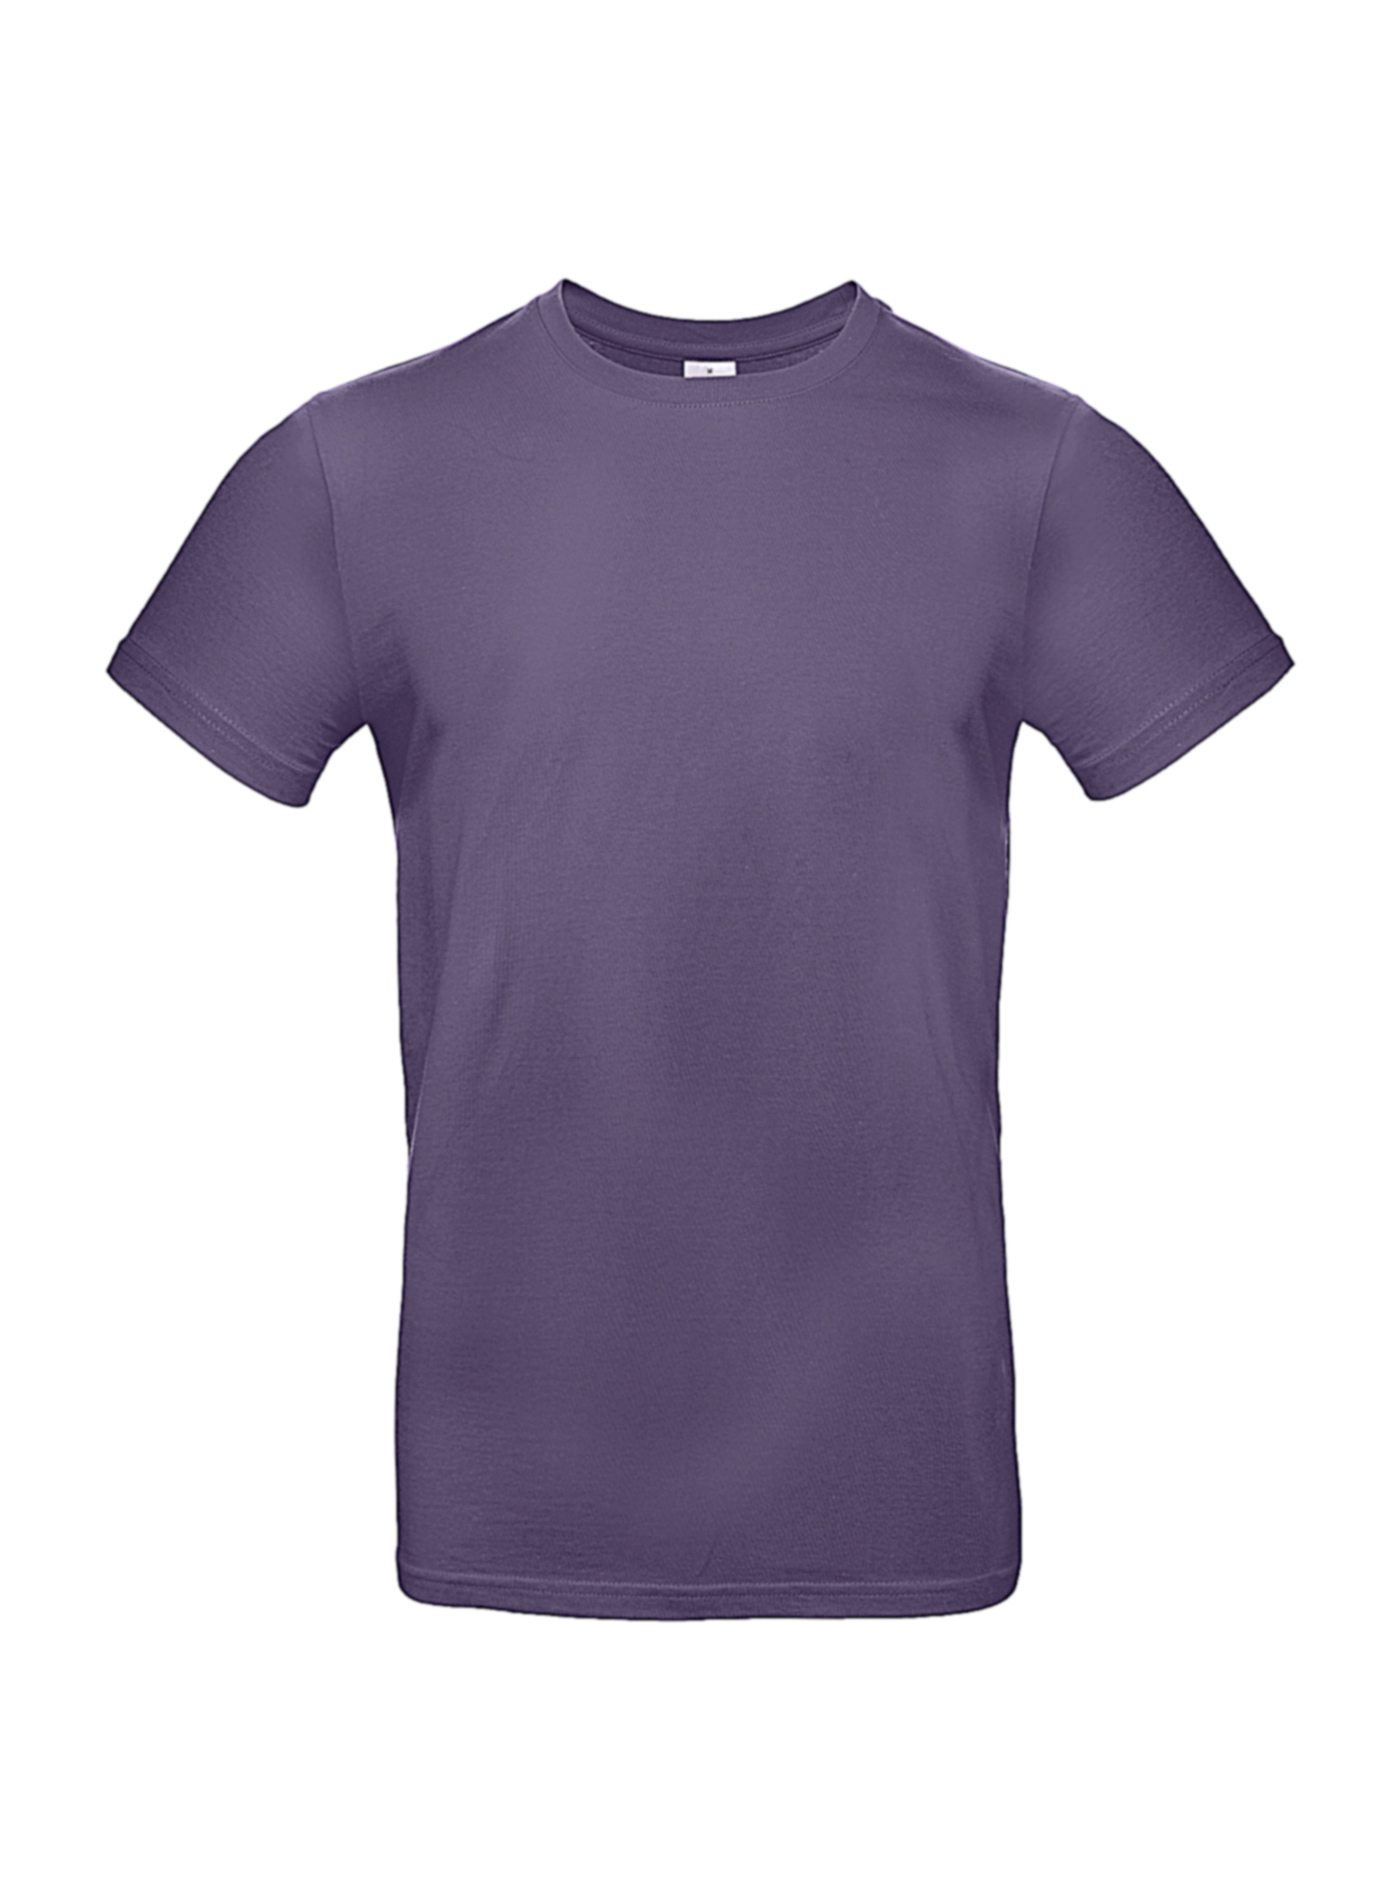 Silnější bavlněné pánské tričko - Fialová XL